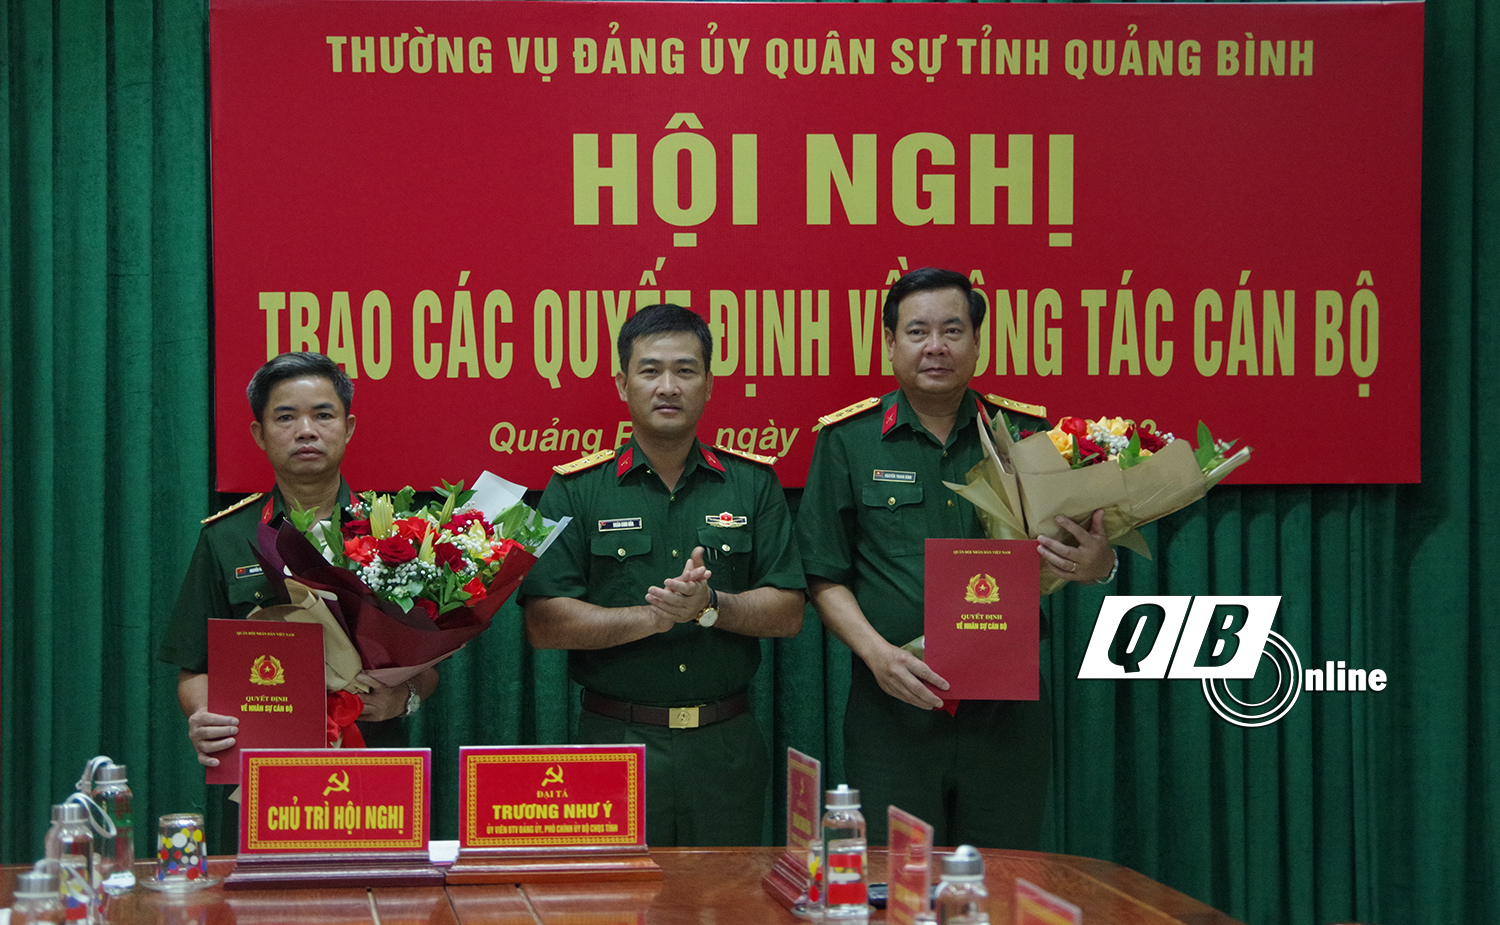 Thượng tá Đoàn Sinh Hòa, Ủy viên Ban Thường vụ Tỉnh ủy, Chỉ huy trưởng Bộ CHQS tỉnh trao Quyết định công tác cán bộ cho thượng tá Nguyễn Văn Huyên và trung tá Nguyễn Thanh Bình